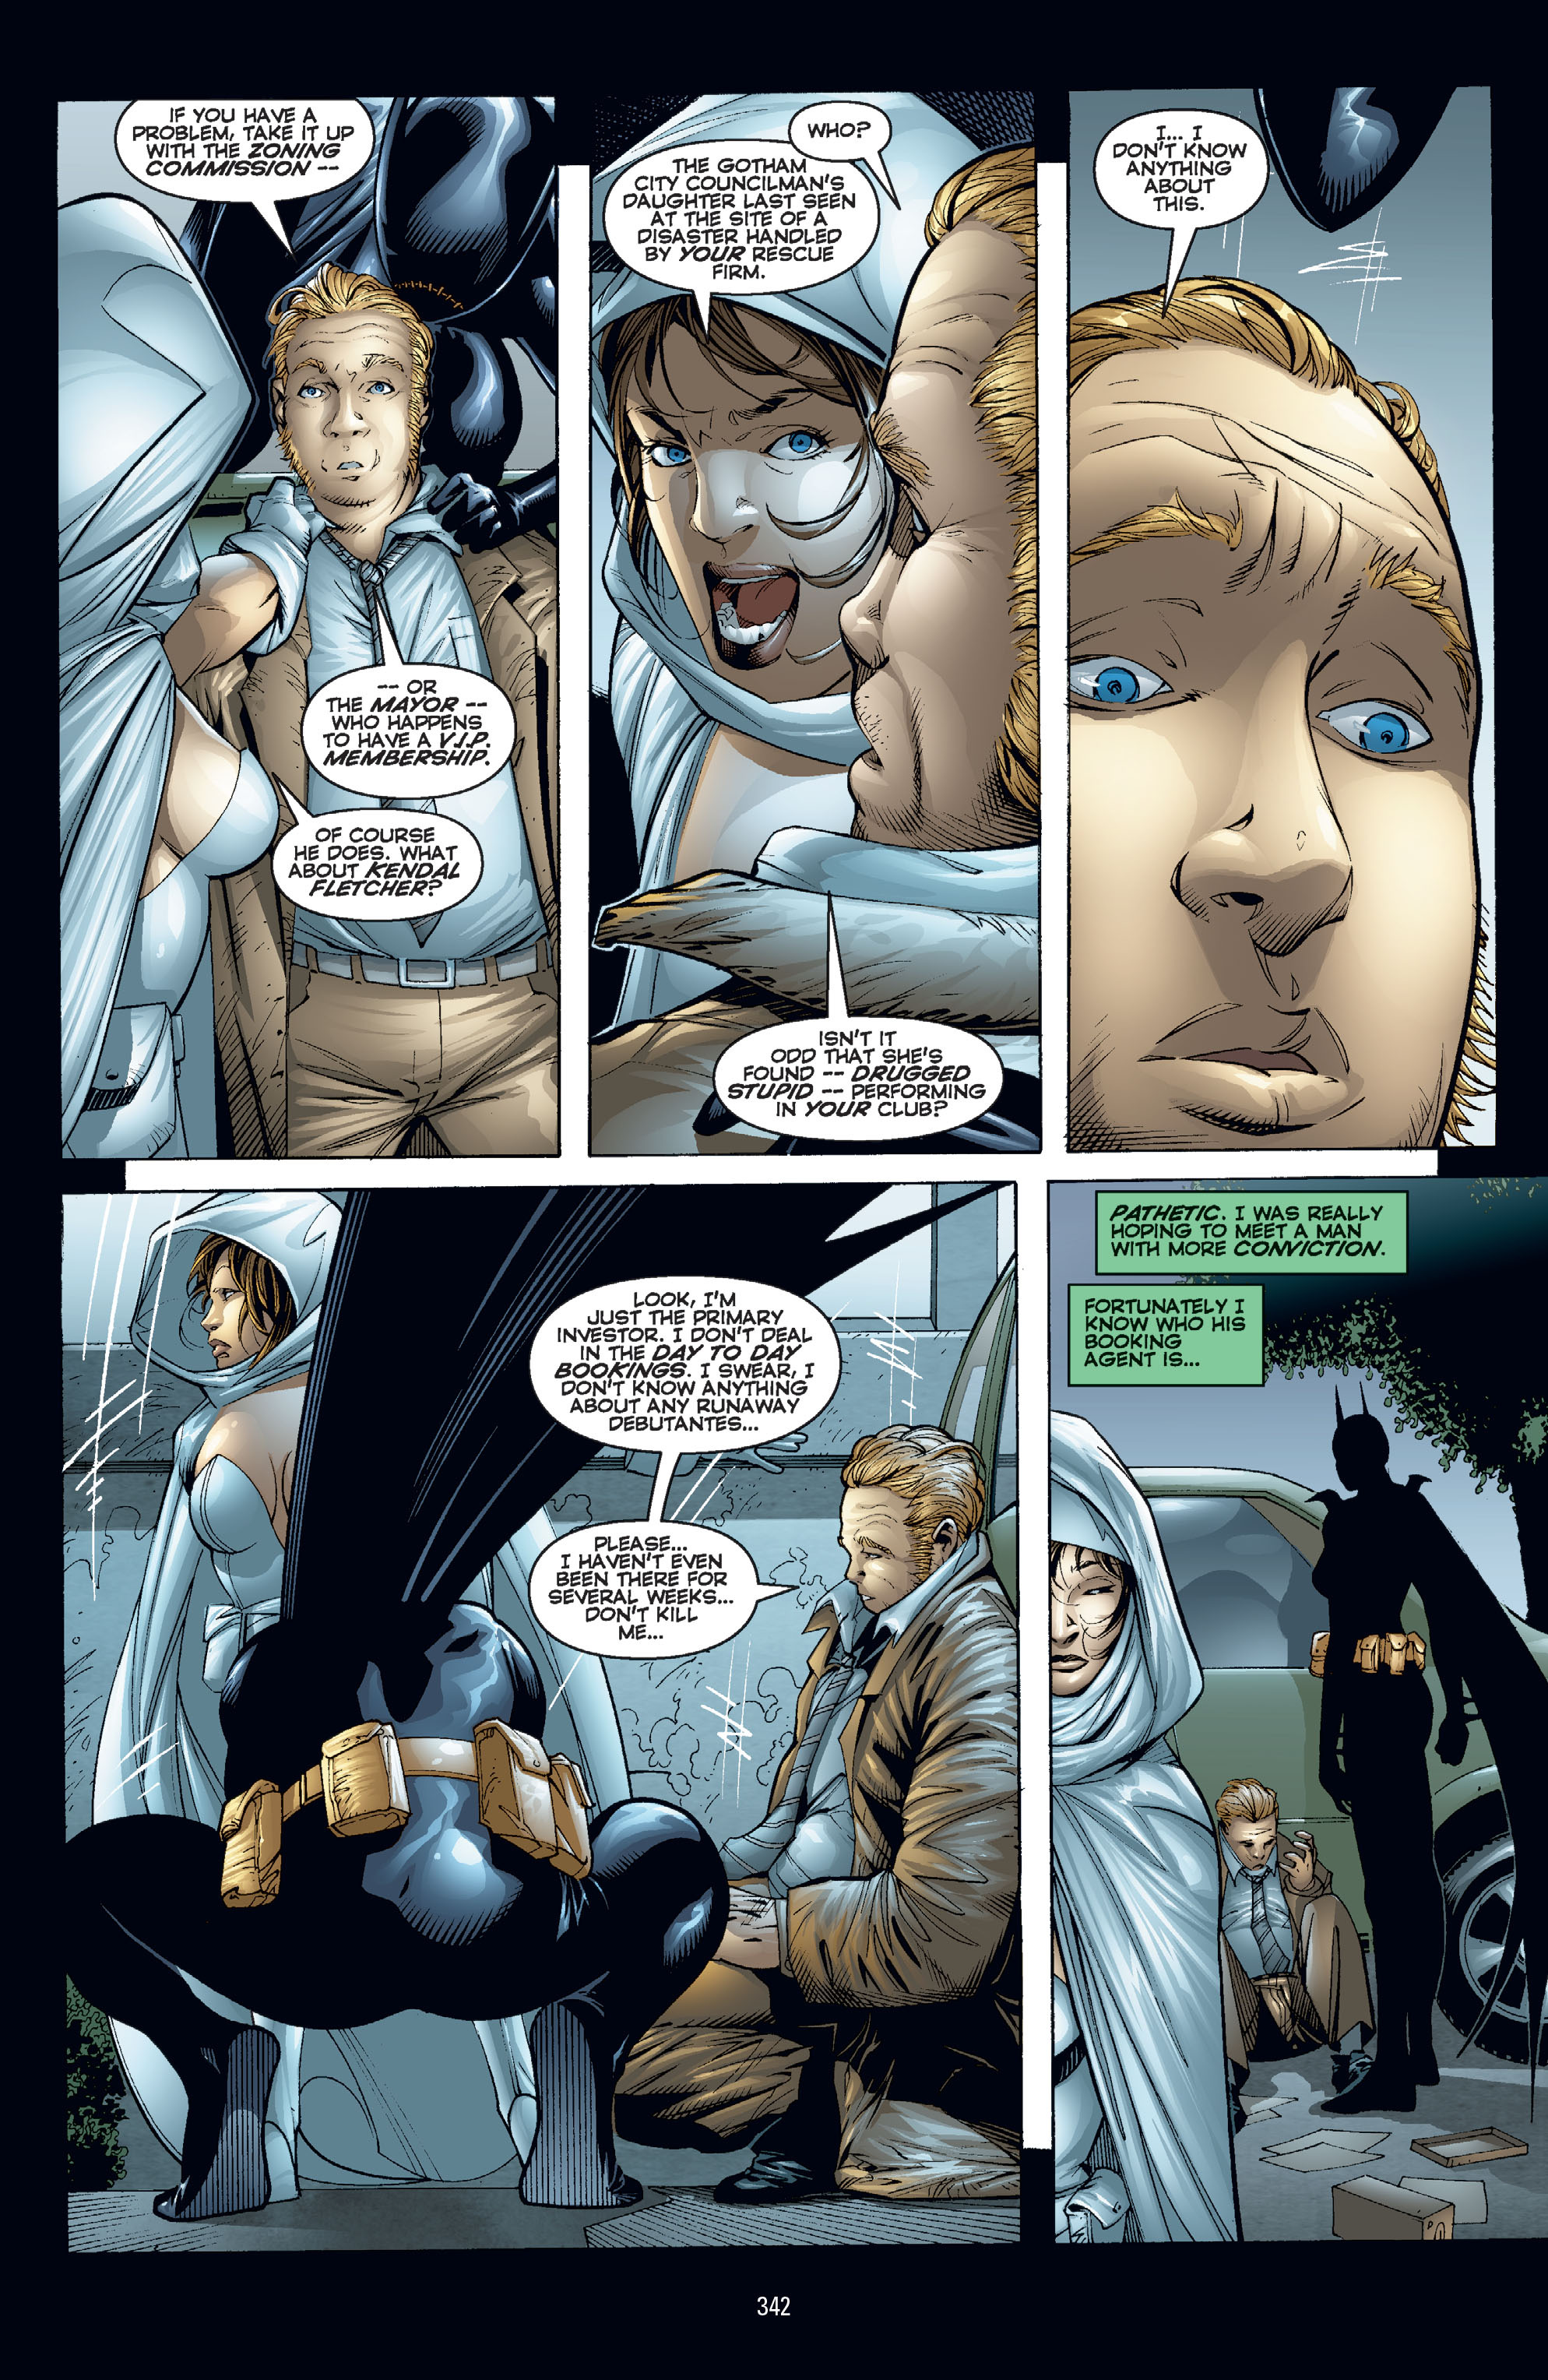 DC Comics/Dark Horse Comics: Justice League Full #1 - English 332